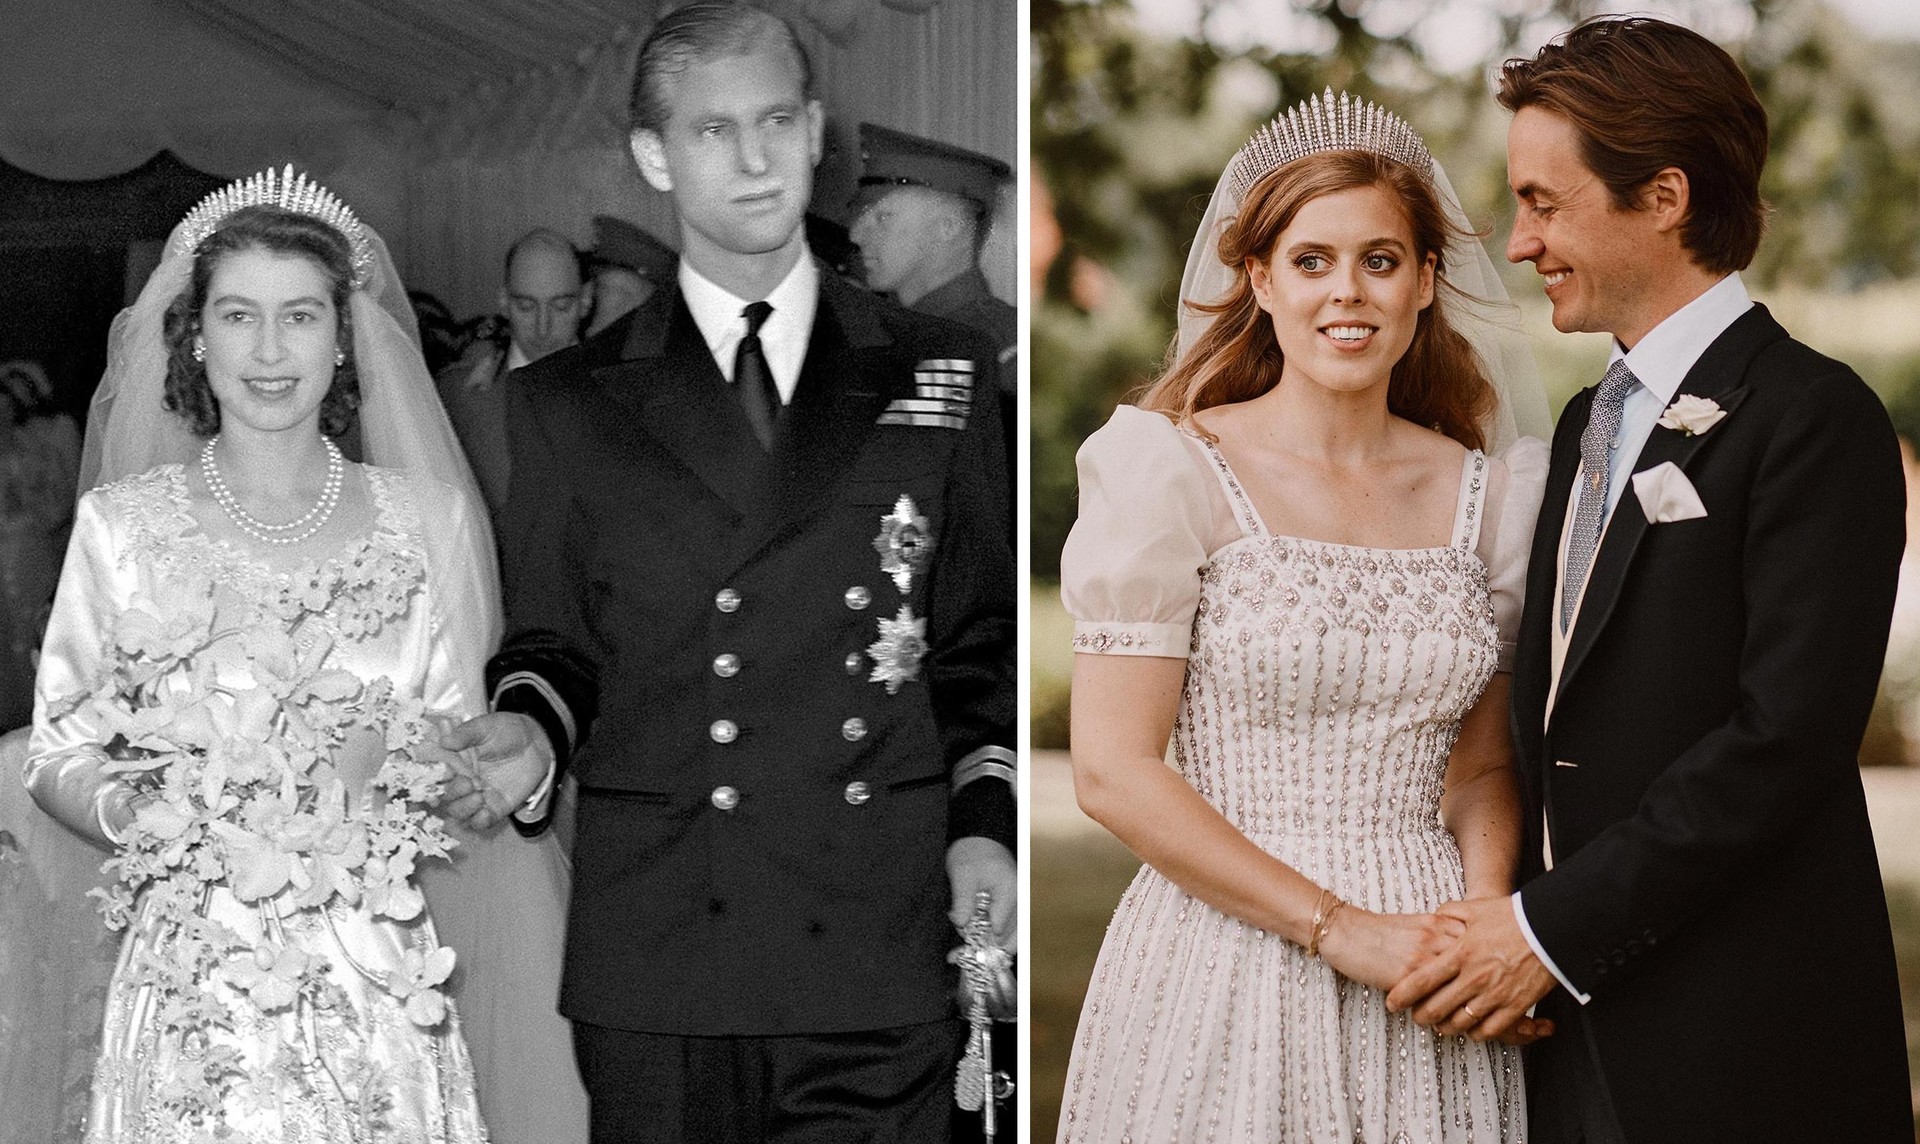 Il matrimonio di Elisabetta II nel 1947 e il matrimonio della principessa Beatrice nel 2020